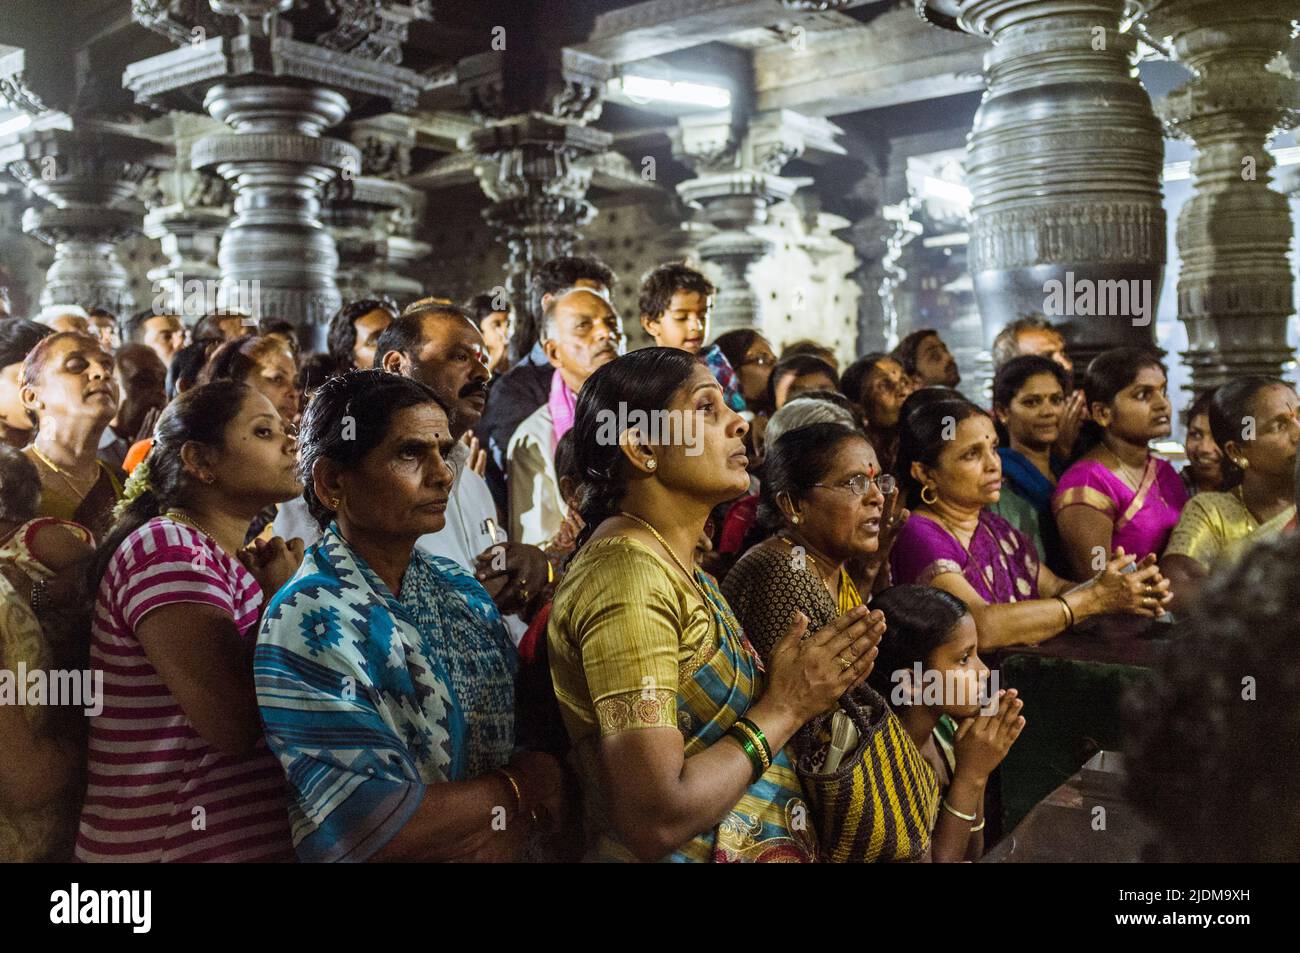 Belur, Karnataka, Inde : Un groupe de fidèles se tiennent sur la prière à l'intérieur du temple de Channakhava du 12th siècle avant la cérémonie rituelle de la puja. Banque D'Images